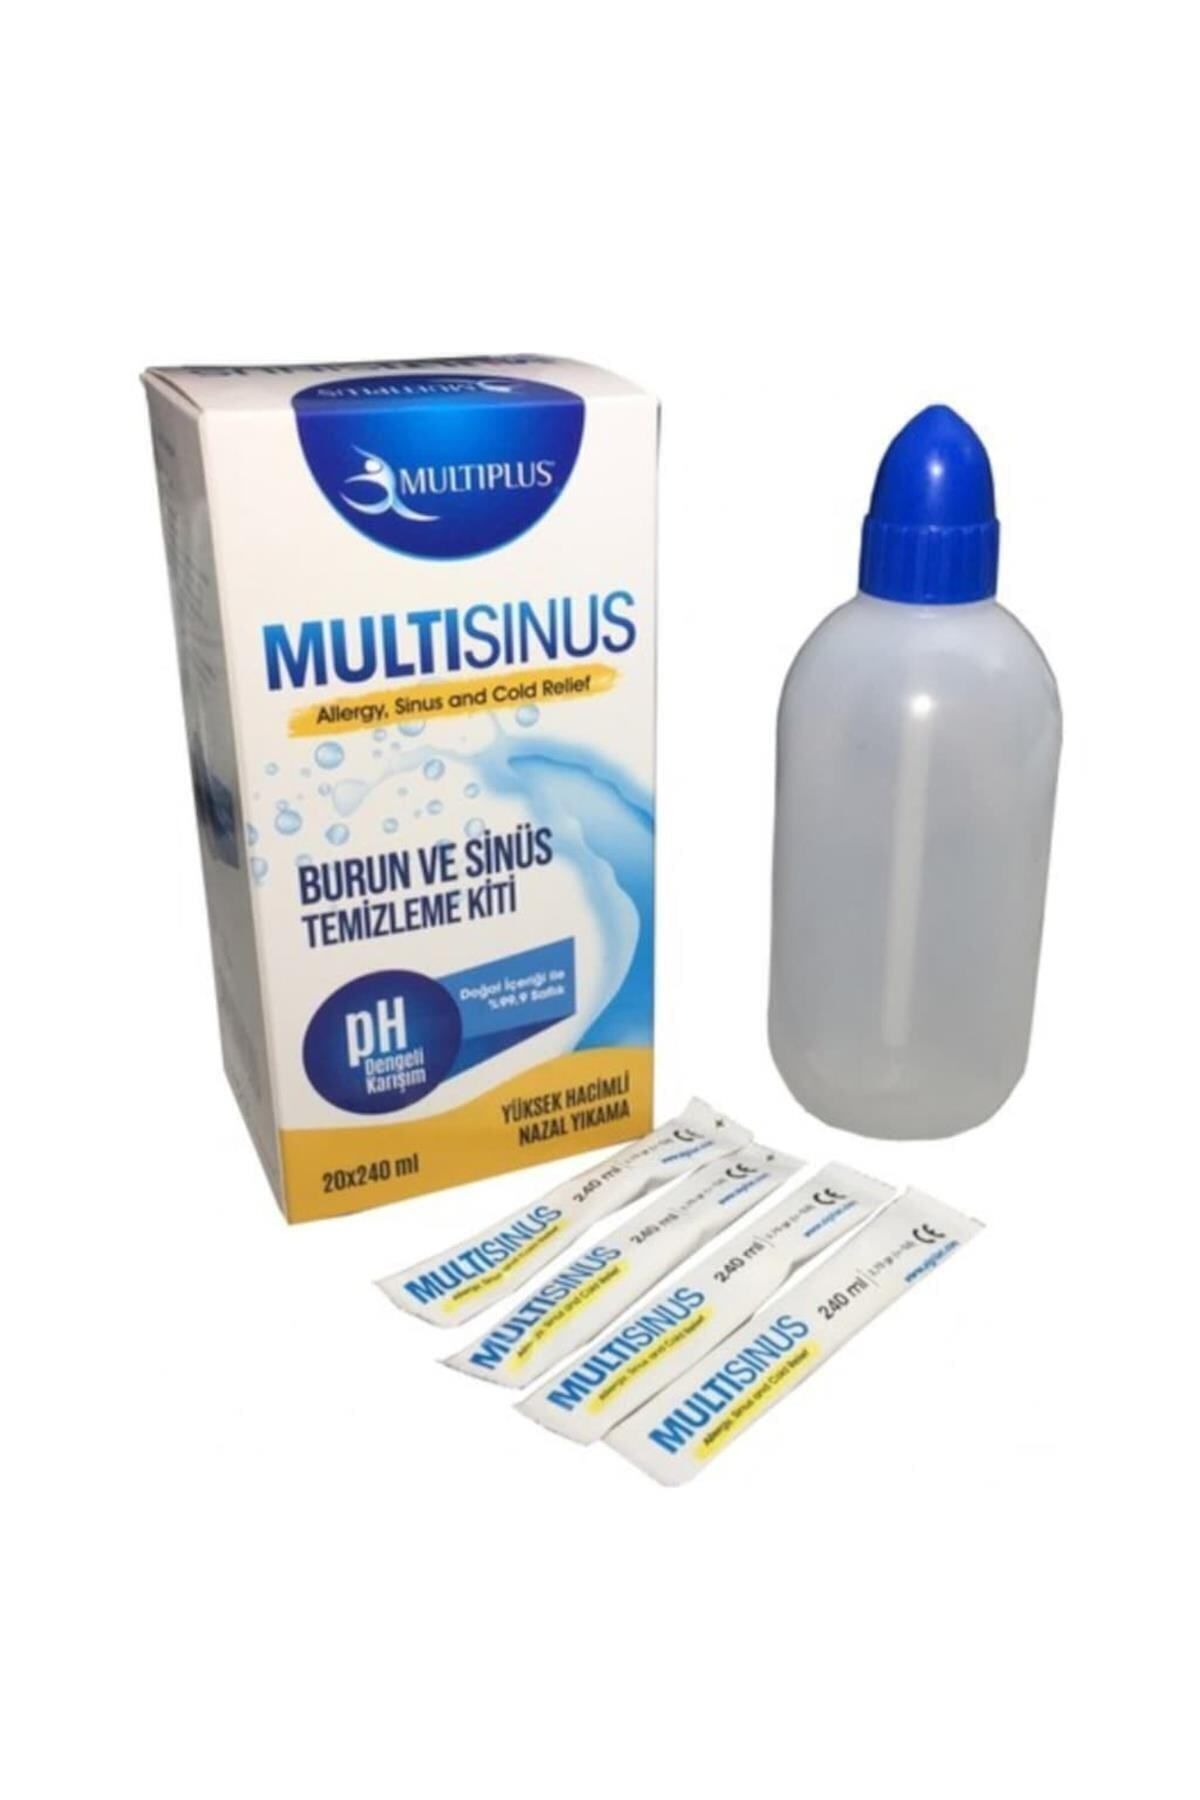 Multiplus Multi Sinüs Rinse Burun Ve Sinüs Temizleme Kiti  (Multisinüs)